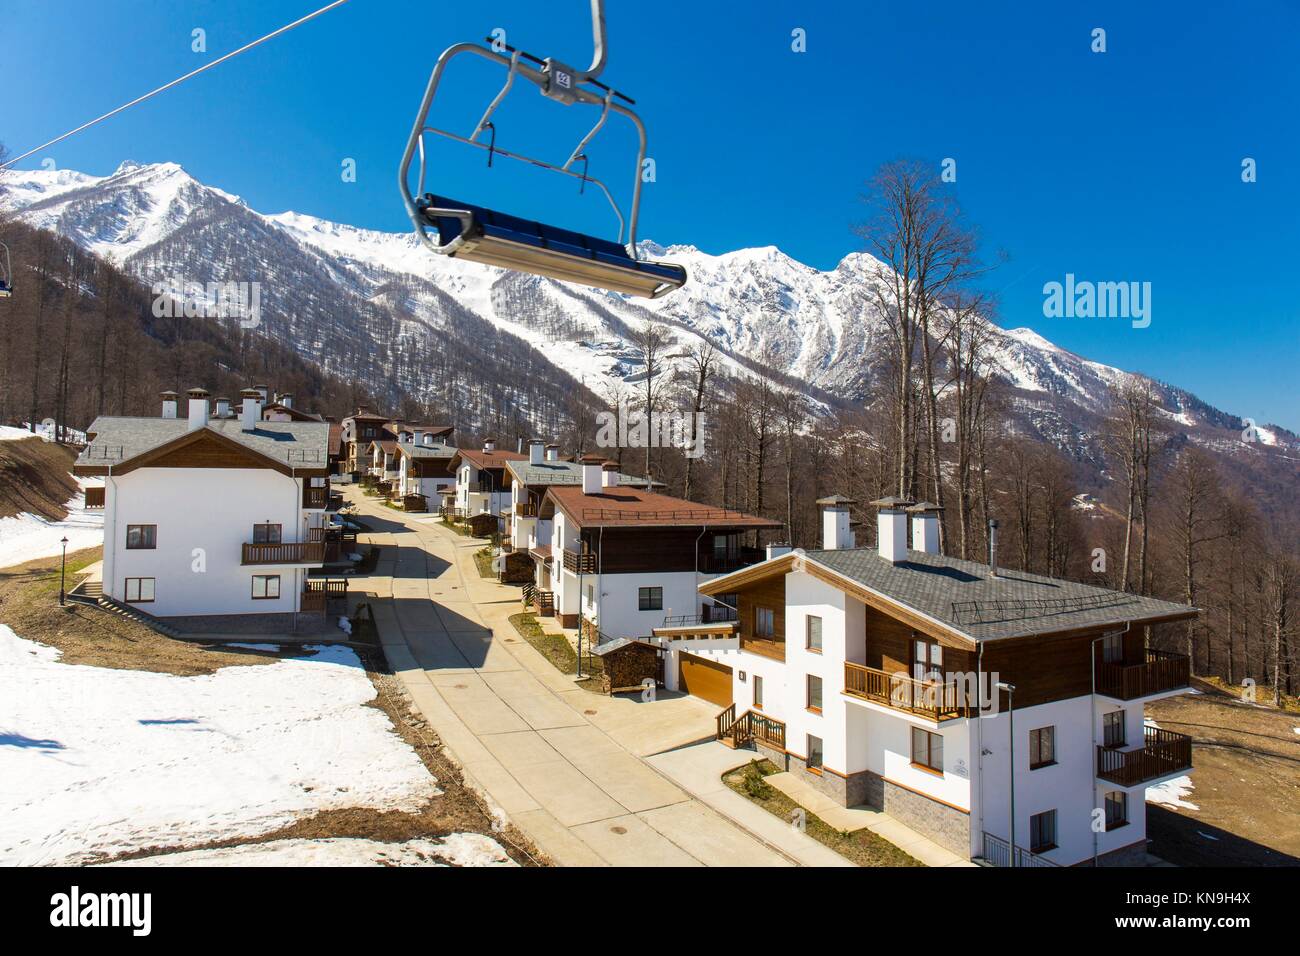 Mountain Ski Resort Rosa Khutor avec chalets sur fond des montagnes enneigées. Banque D'Images